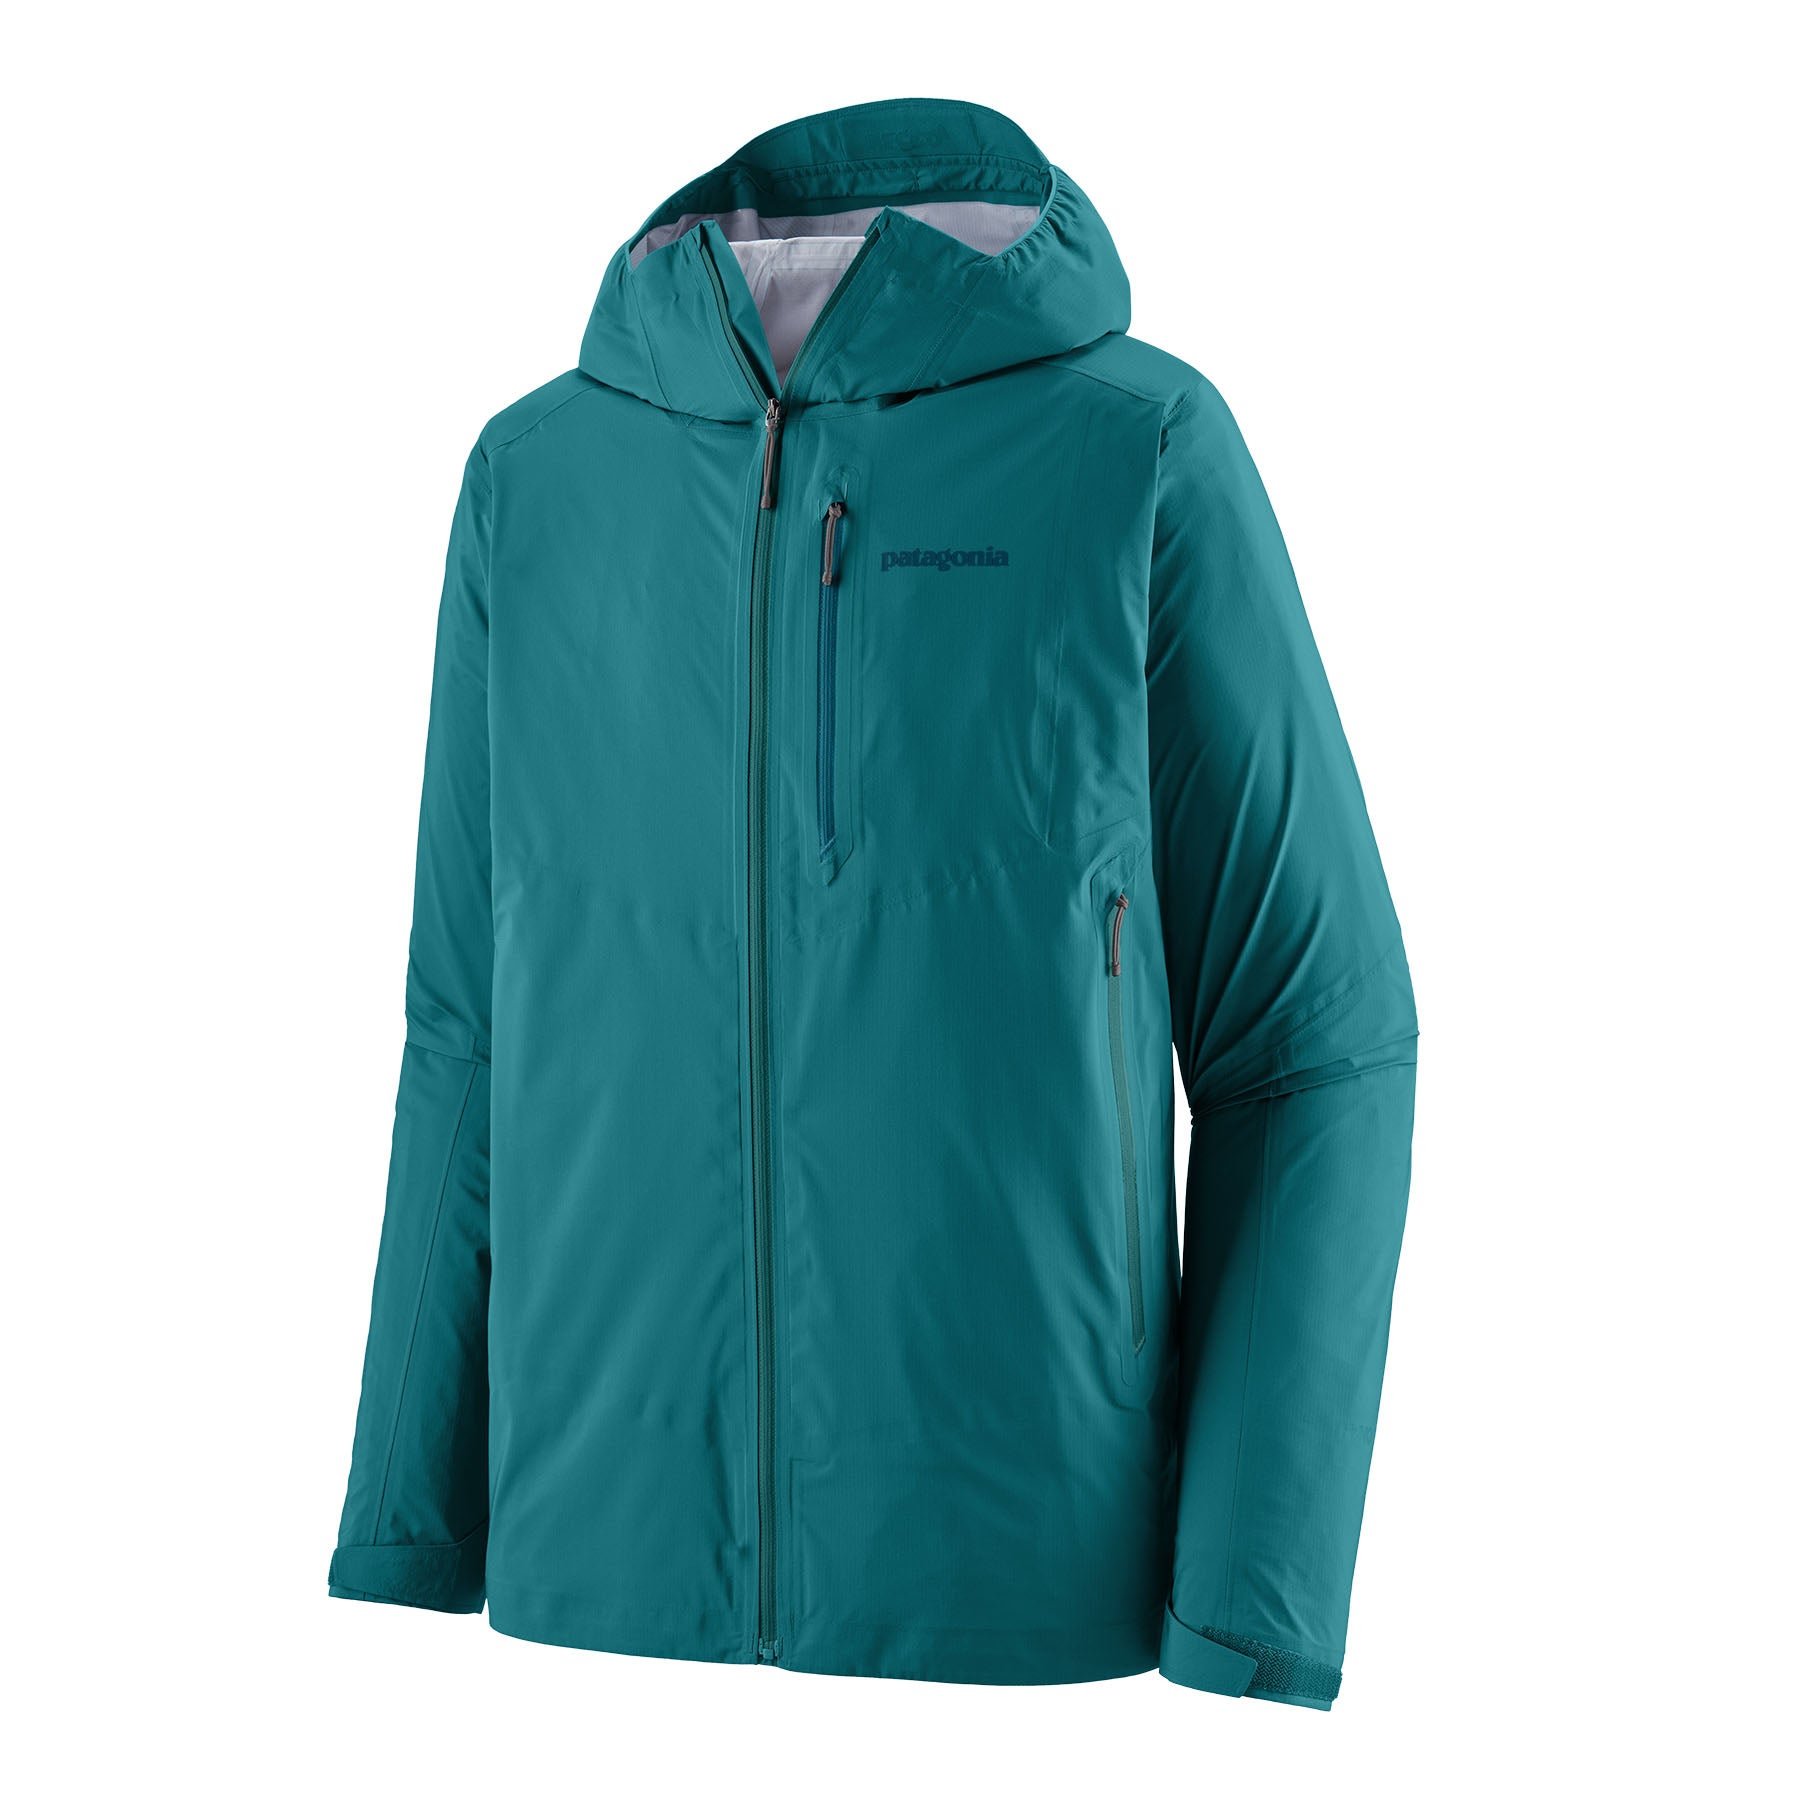 Patagonia®Men's Storm10 Jacket 輕量3層防水外套| Pro Outdoor